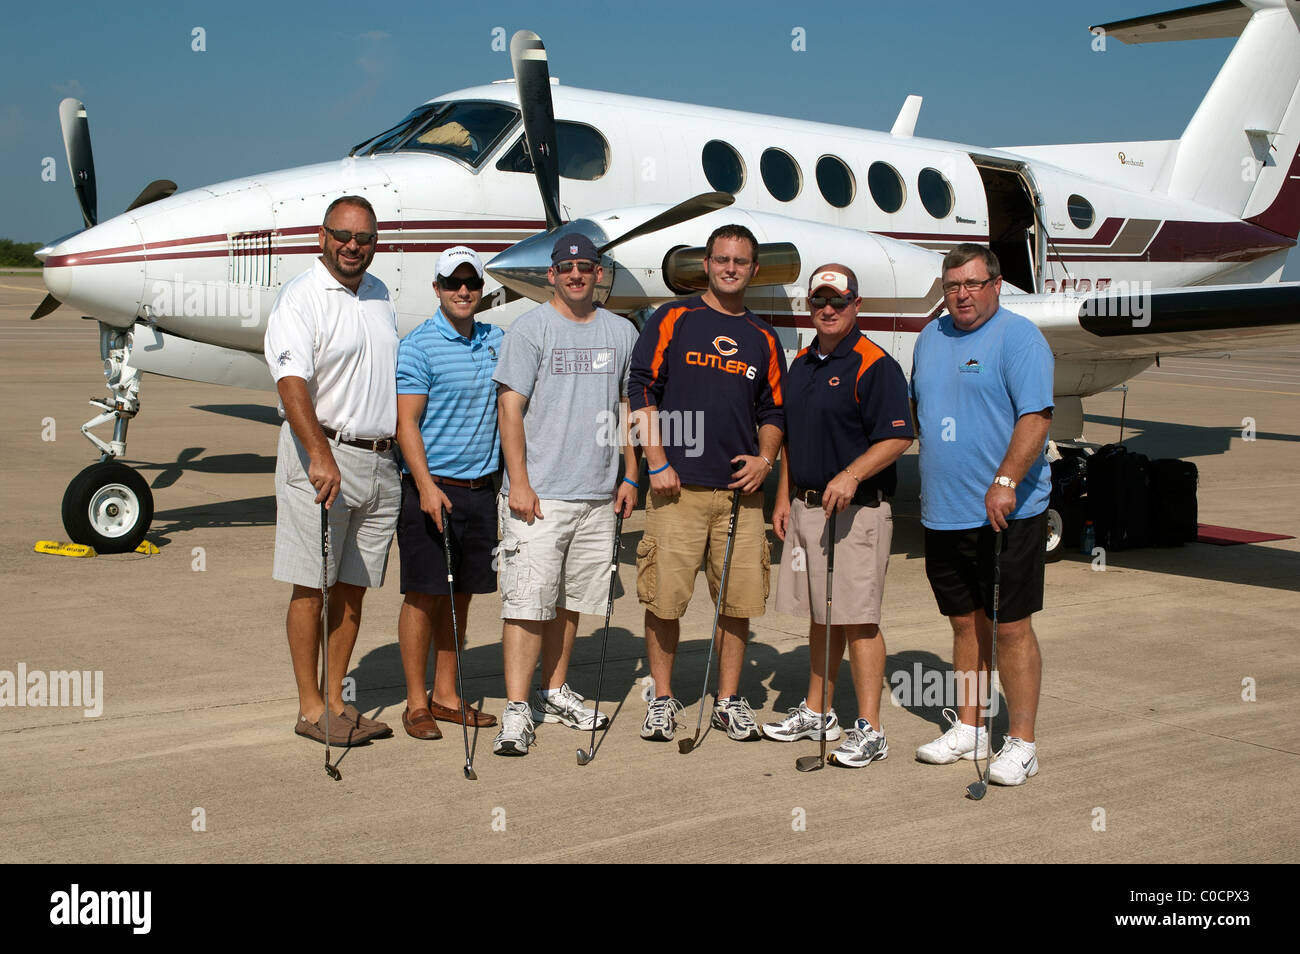 Chicago-Golf-Fans fliegen mit Privatflugzeug nach Arlington, Texas, USA, um Golf zu spielen, wo ist das Wetter besser. Stockfoto